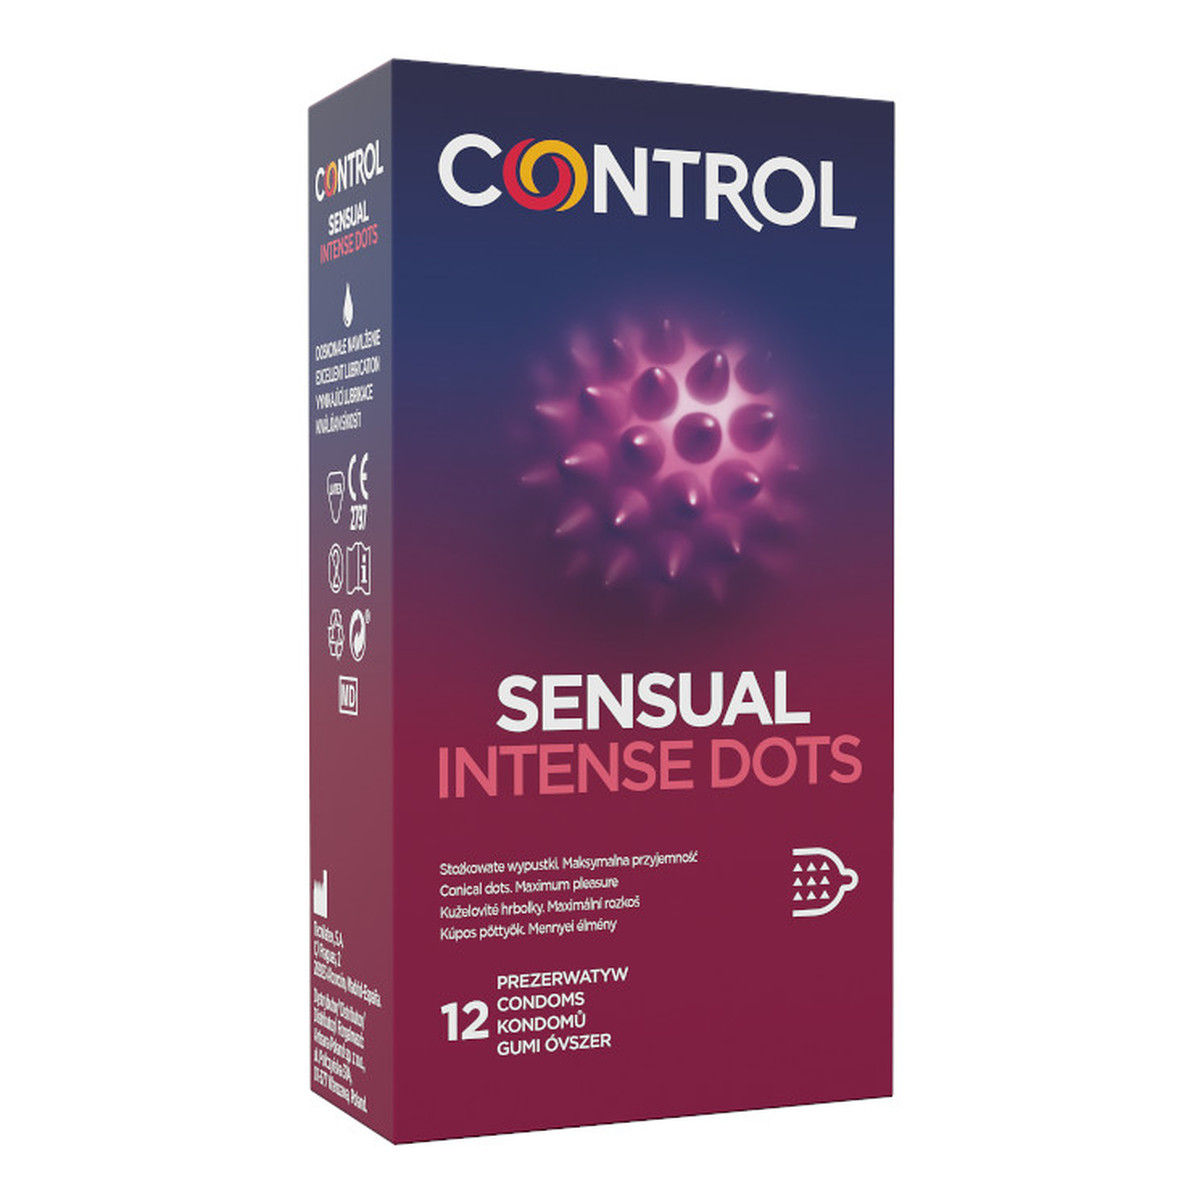 Control Sensual intense dots prezerwatywy ze stożkowatymi wypustkami 12szt.